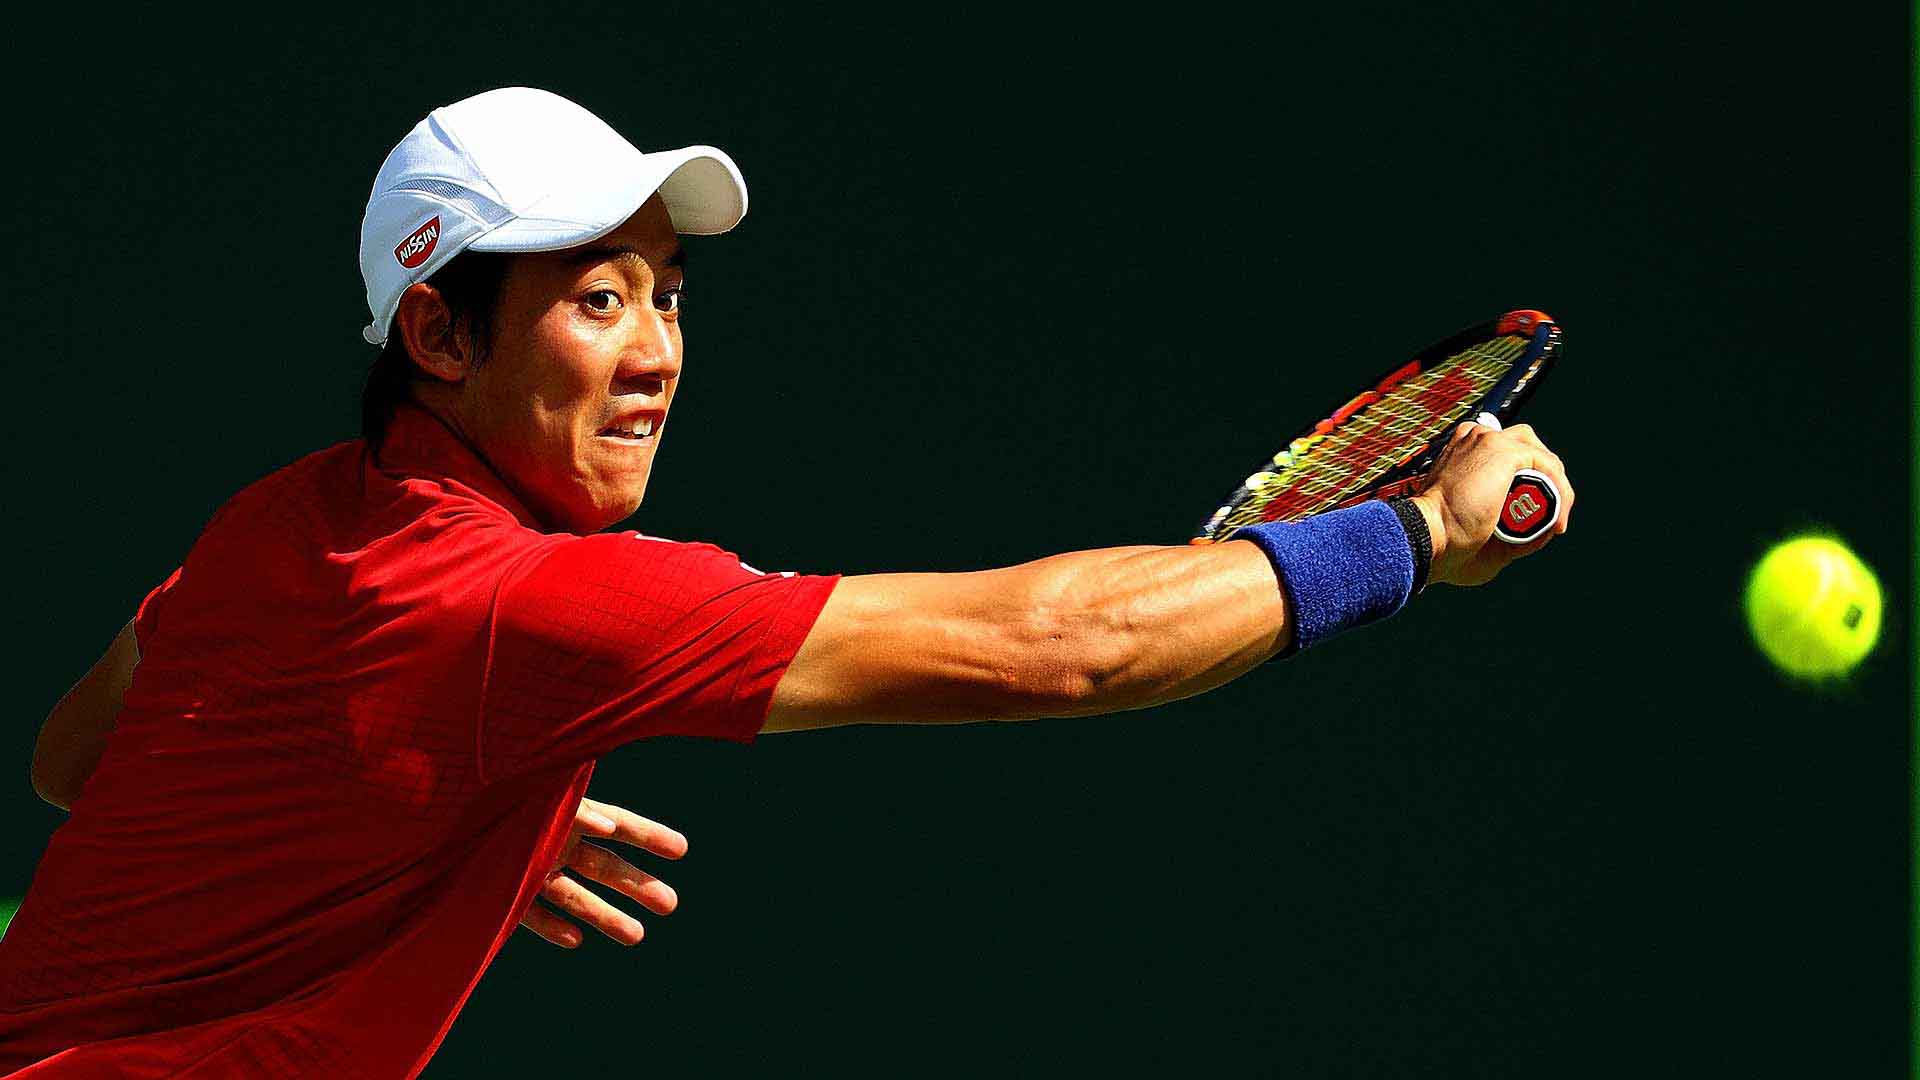 Per Kei Nishikori è la settima semifinale in un Masters 1000.